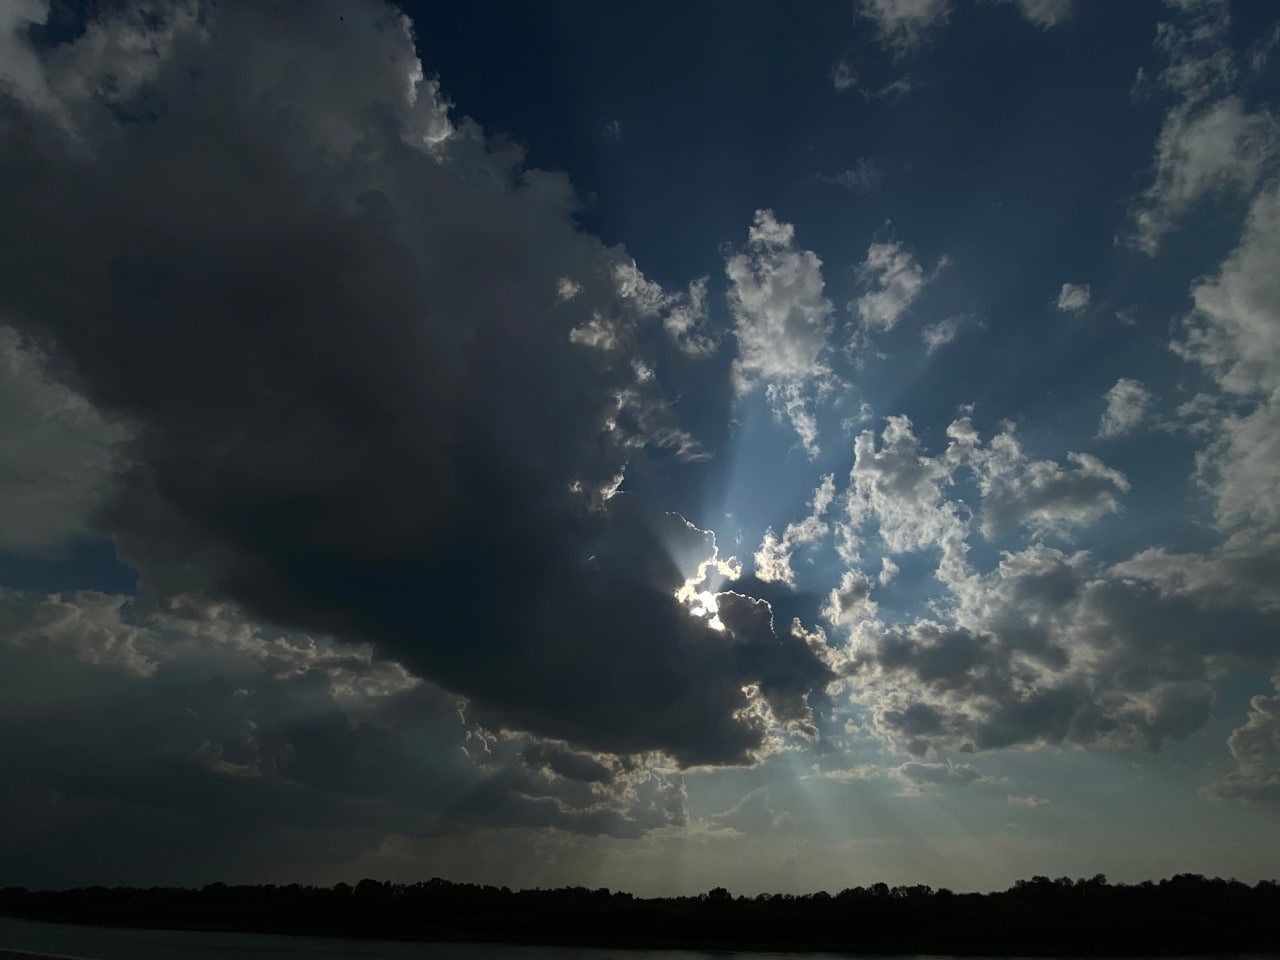 Фотоподборка выходного дня, посвященная омскому небу